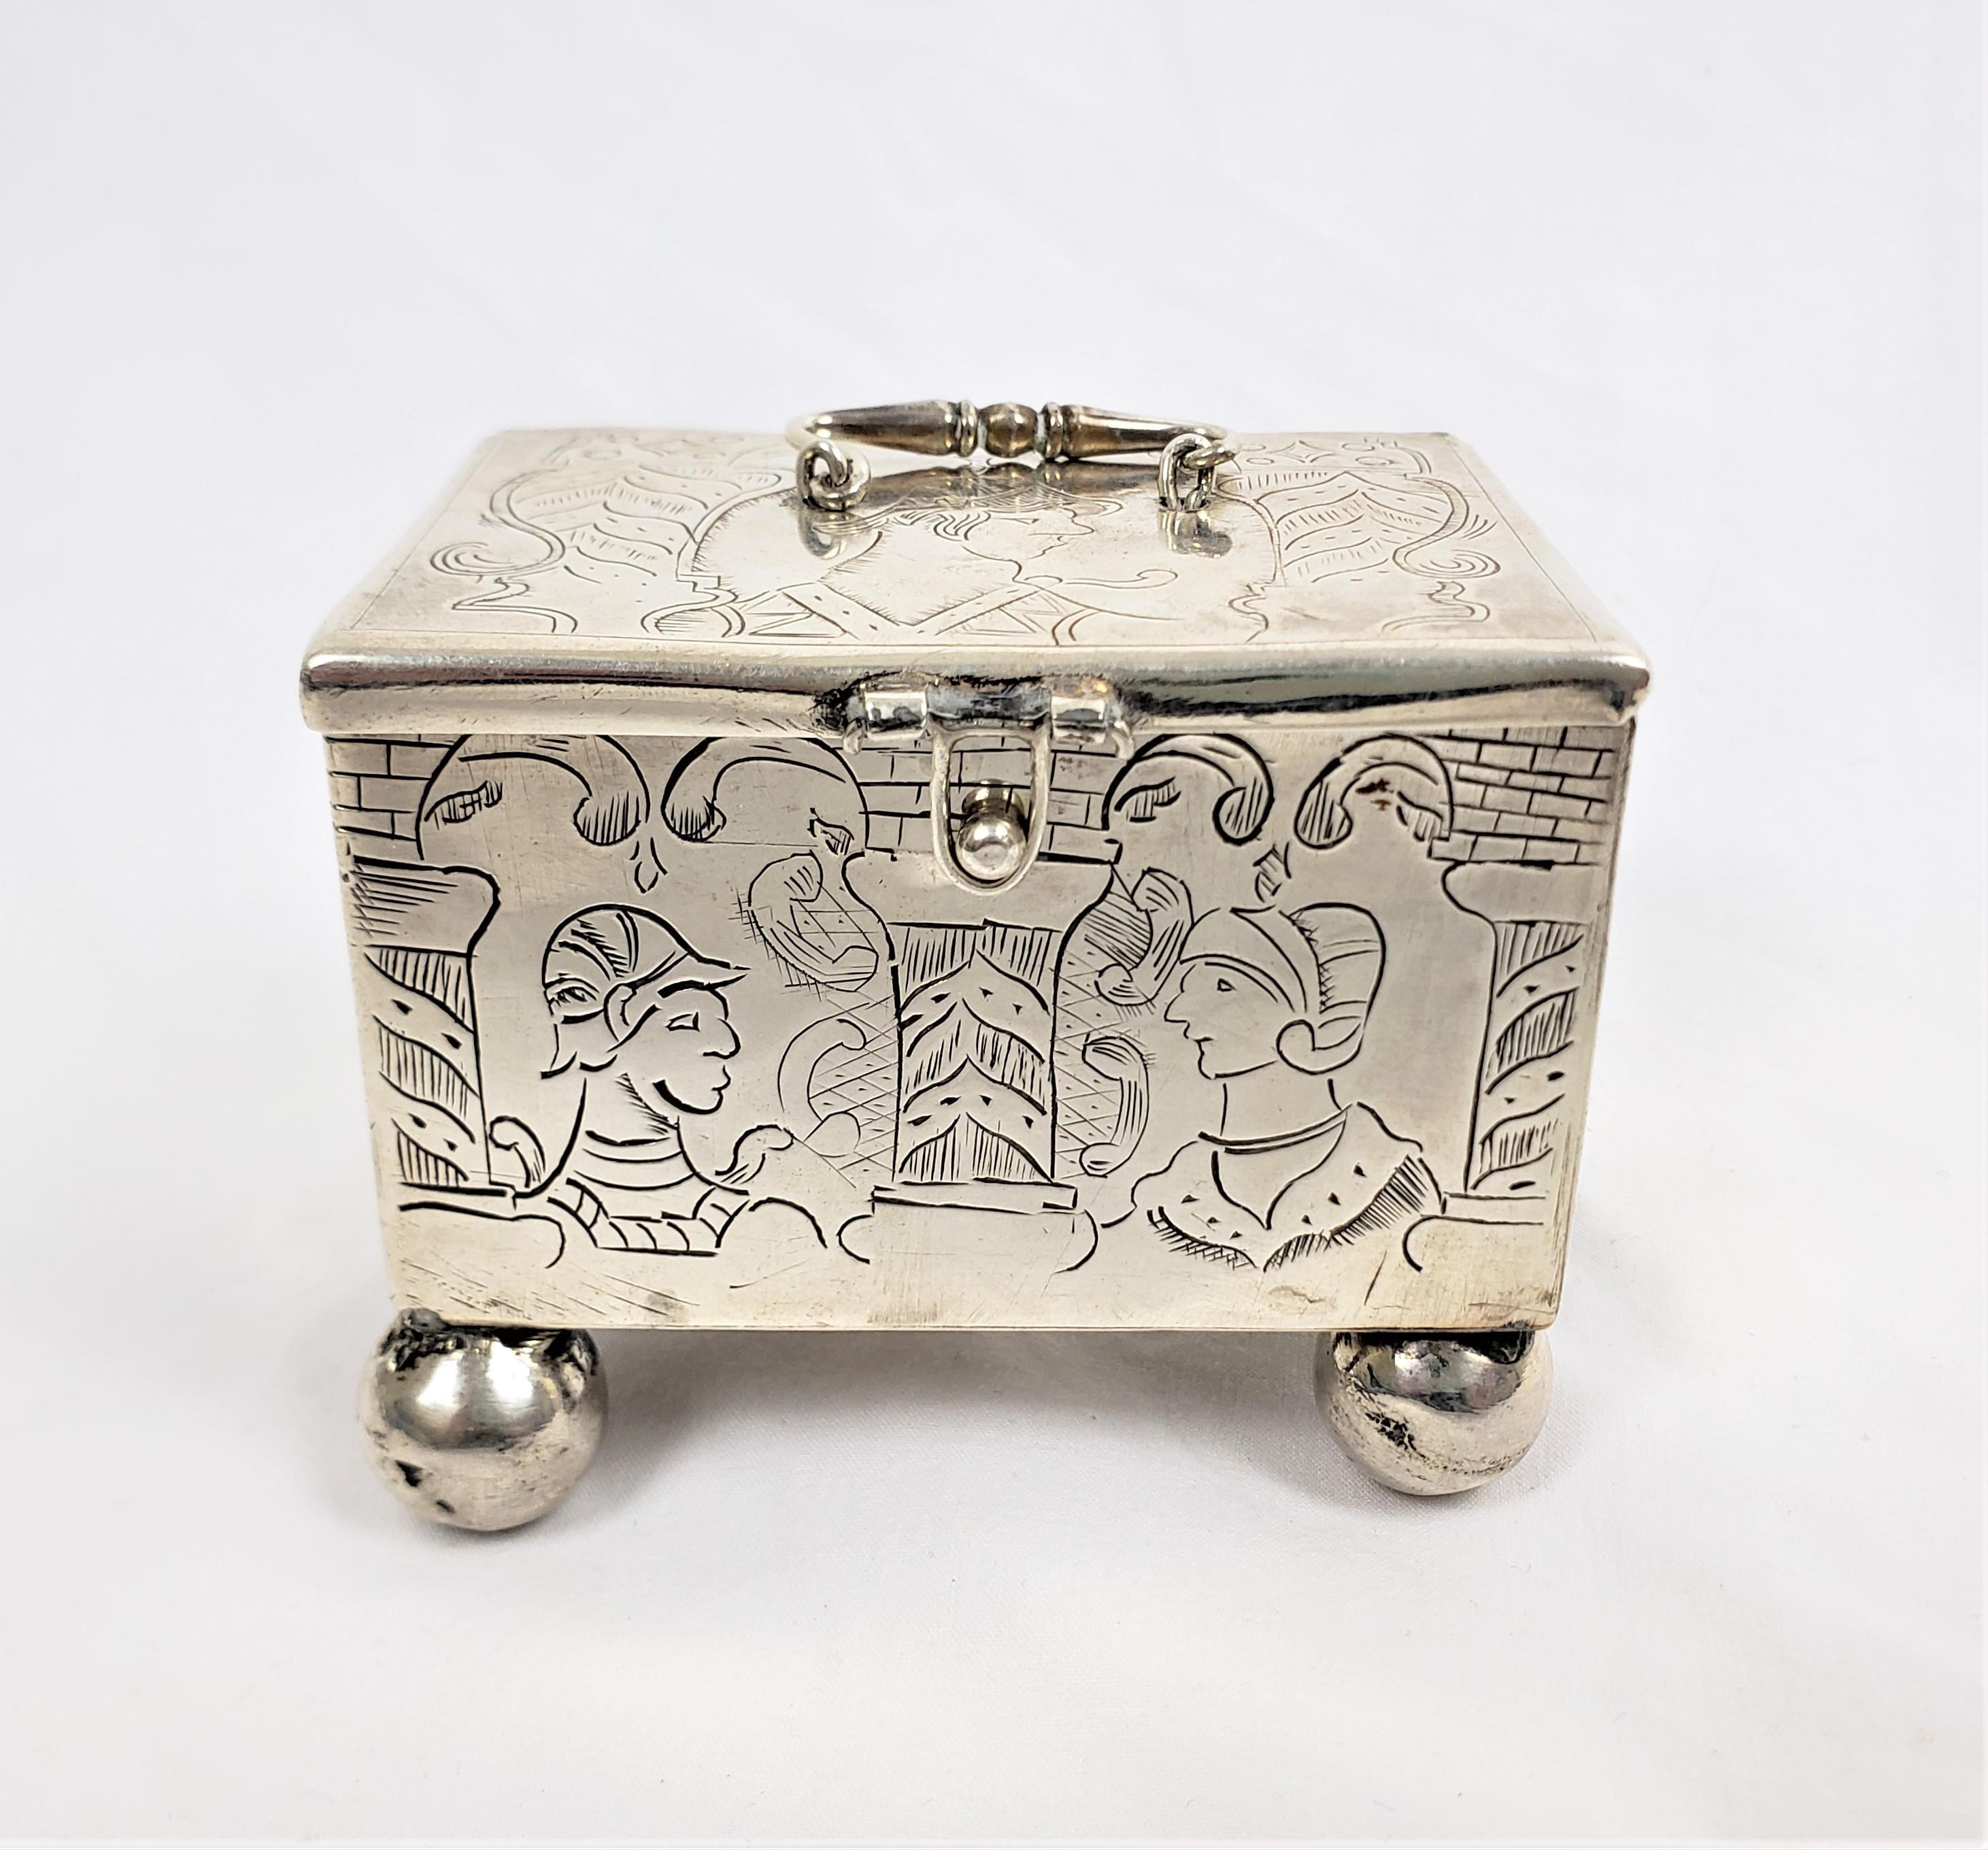 Diese kleine Kiste oder Truhe ist unsigniert, stammt aber vermutlich aus den Niederlanden und wurde um 1710 im Stil des Rococco gefertigt. Diese kleine Heiratstruhe besteht aus Sterlingsilber und hat einen beweglichen Henkel und Füße. Auf der